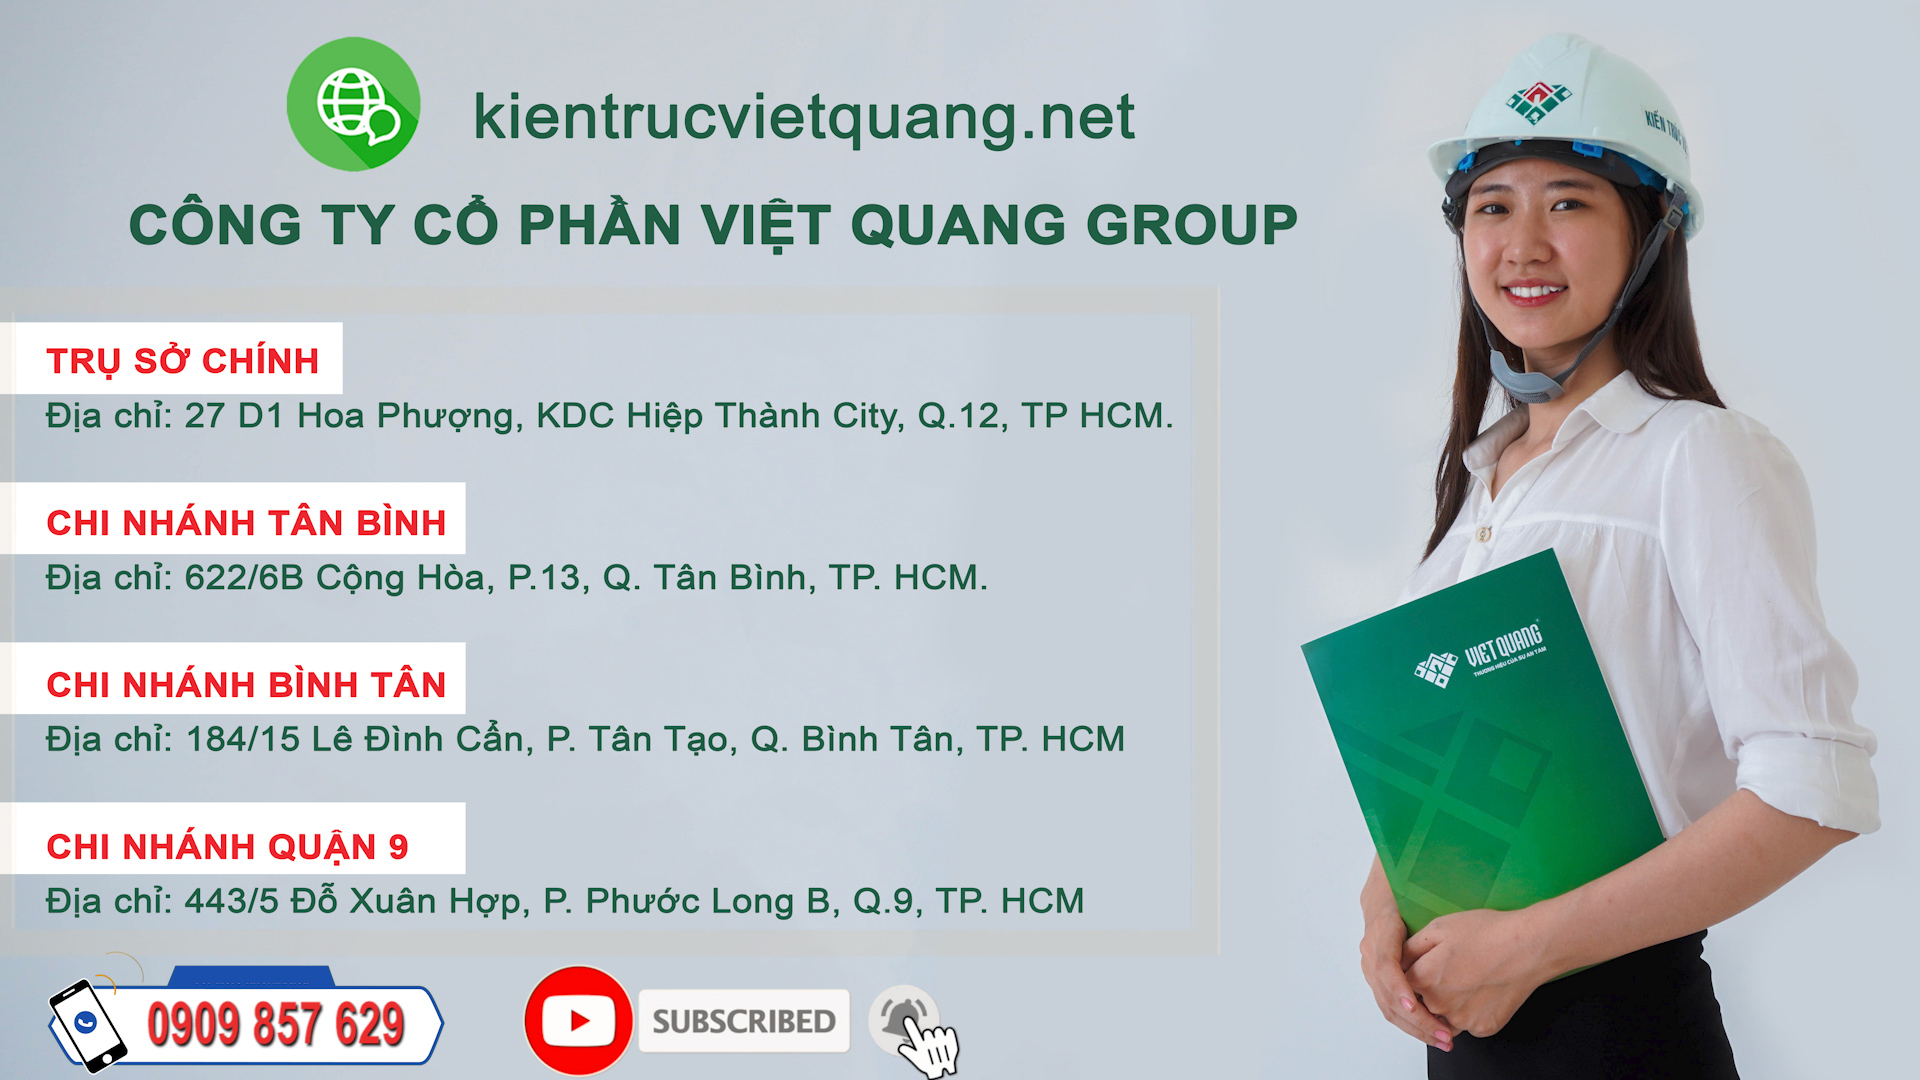 Bảng báo giá sửa chữa nhà trọn gói tại TP HCM – Công ty Việt Quang Group 